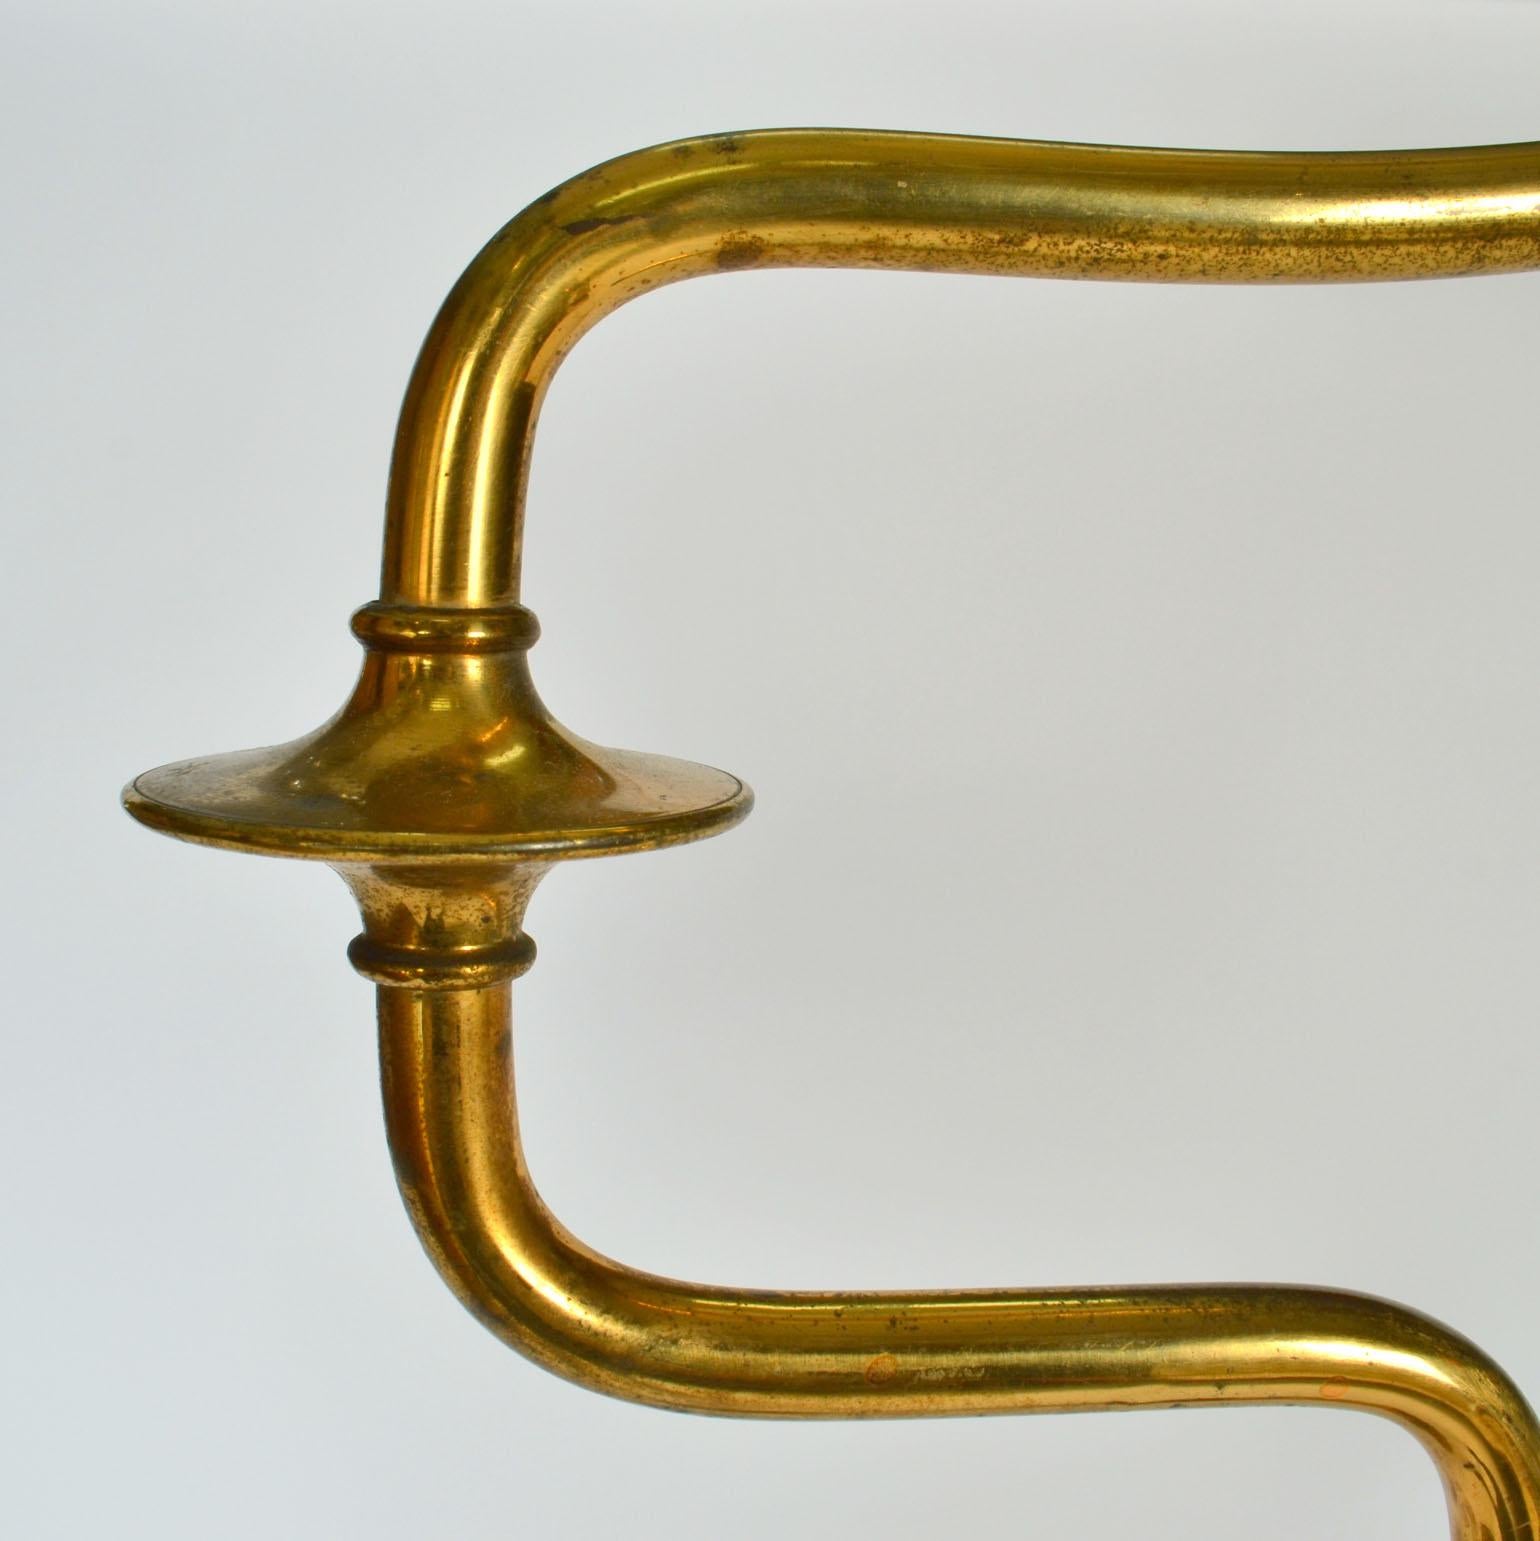 Italian Swing Arm Brass Floor Lamp, Original Black Shade, 1950's Stilnovo Style For Sale 8